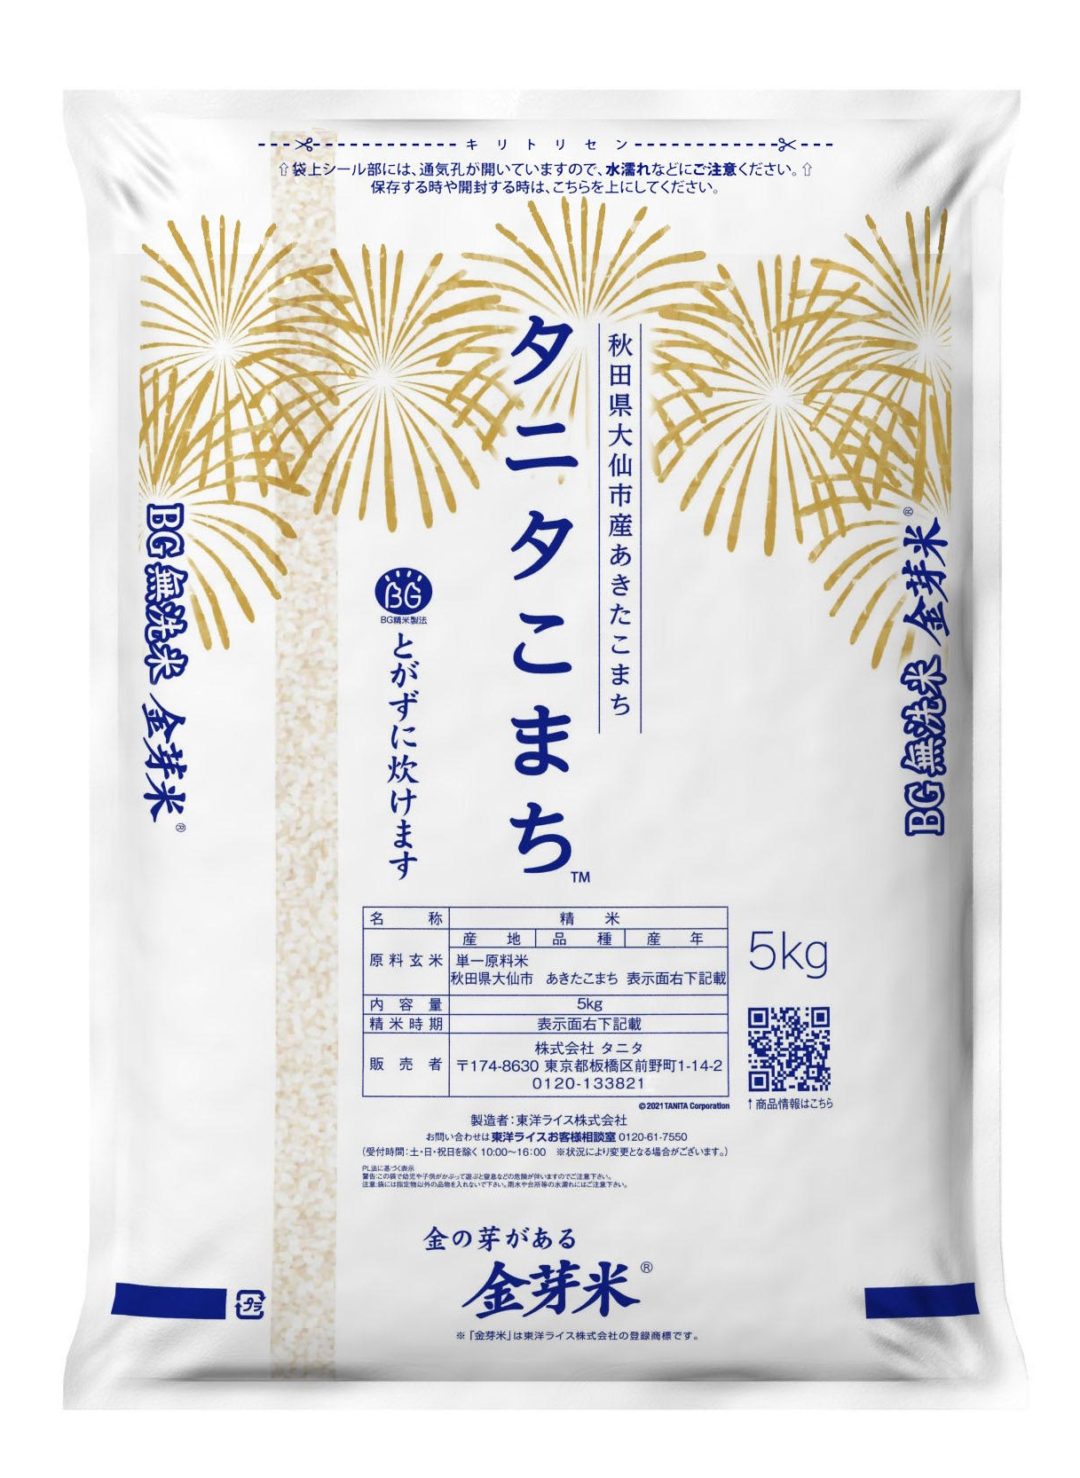 有機質肥料で育てた「金芽米 タニタこまち」　オンラインショップで販売、予約は12月10日まで